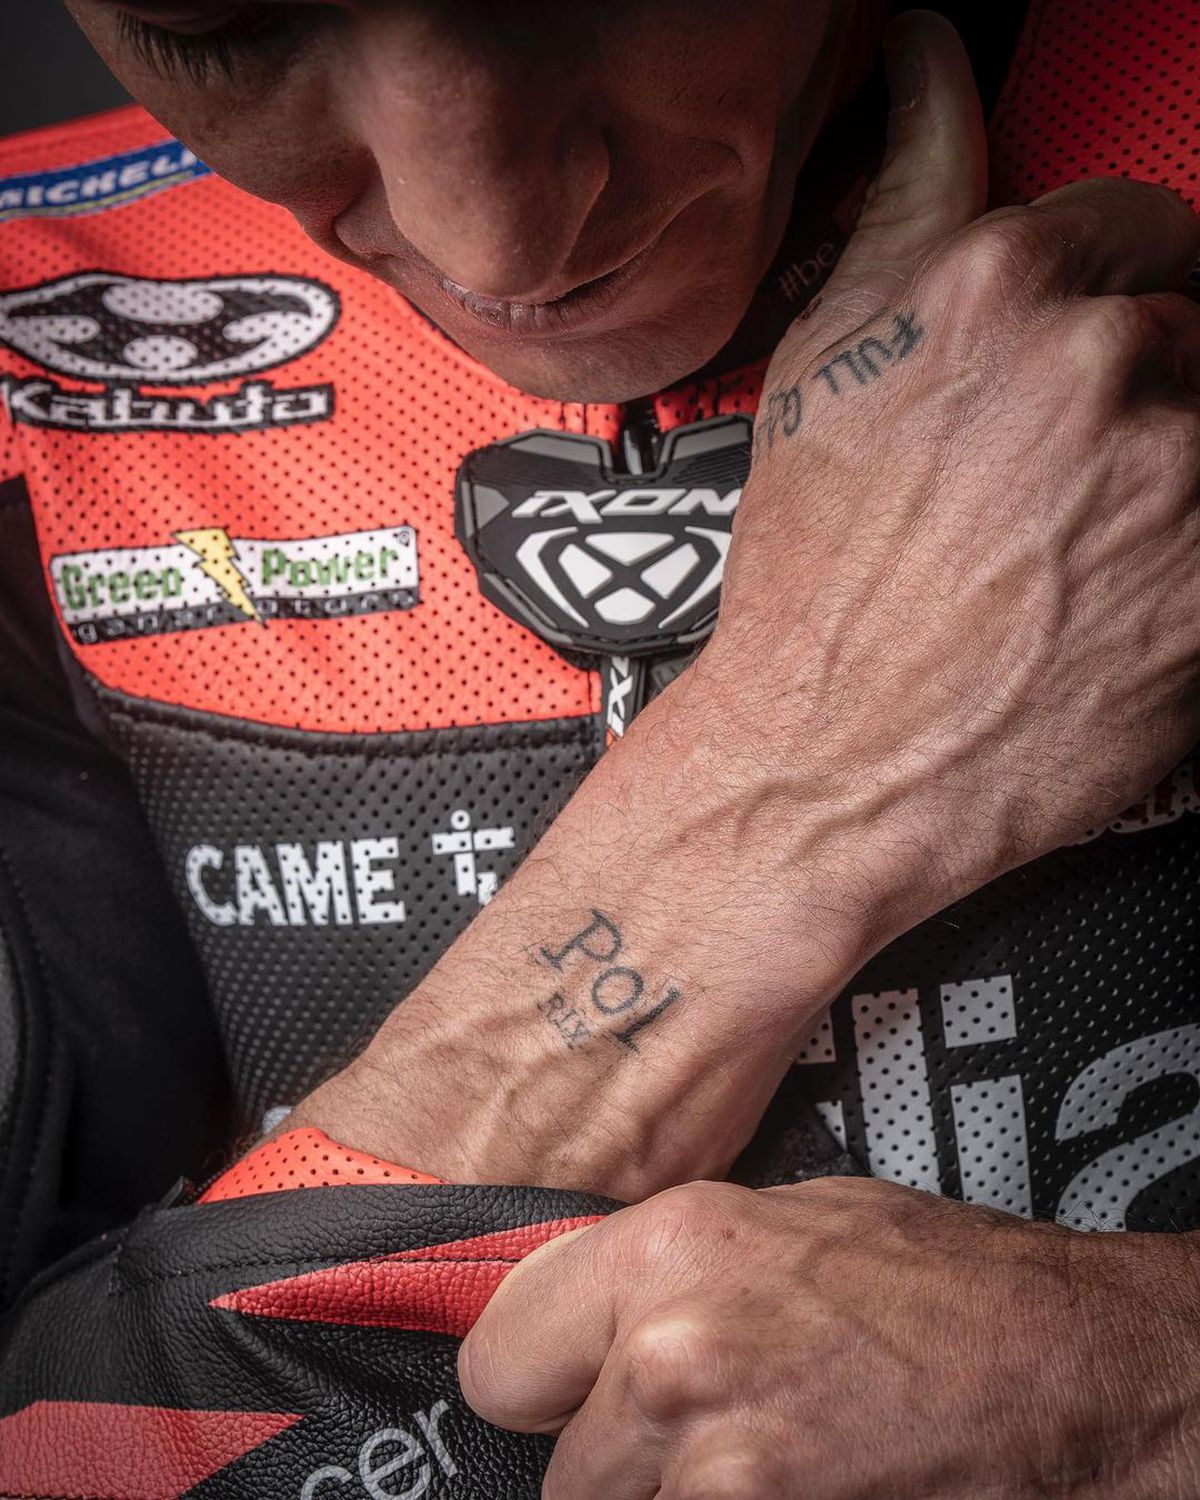 Durere și artă » Piloții din MotoGP așa cum nu i-ai mai văzut » S-au dezbrăcat și își arată cicatricile șocante, dar și tatuajele spectaculoase